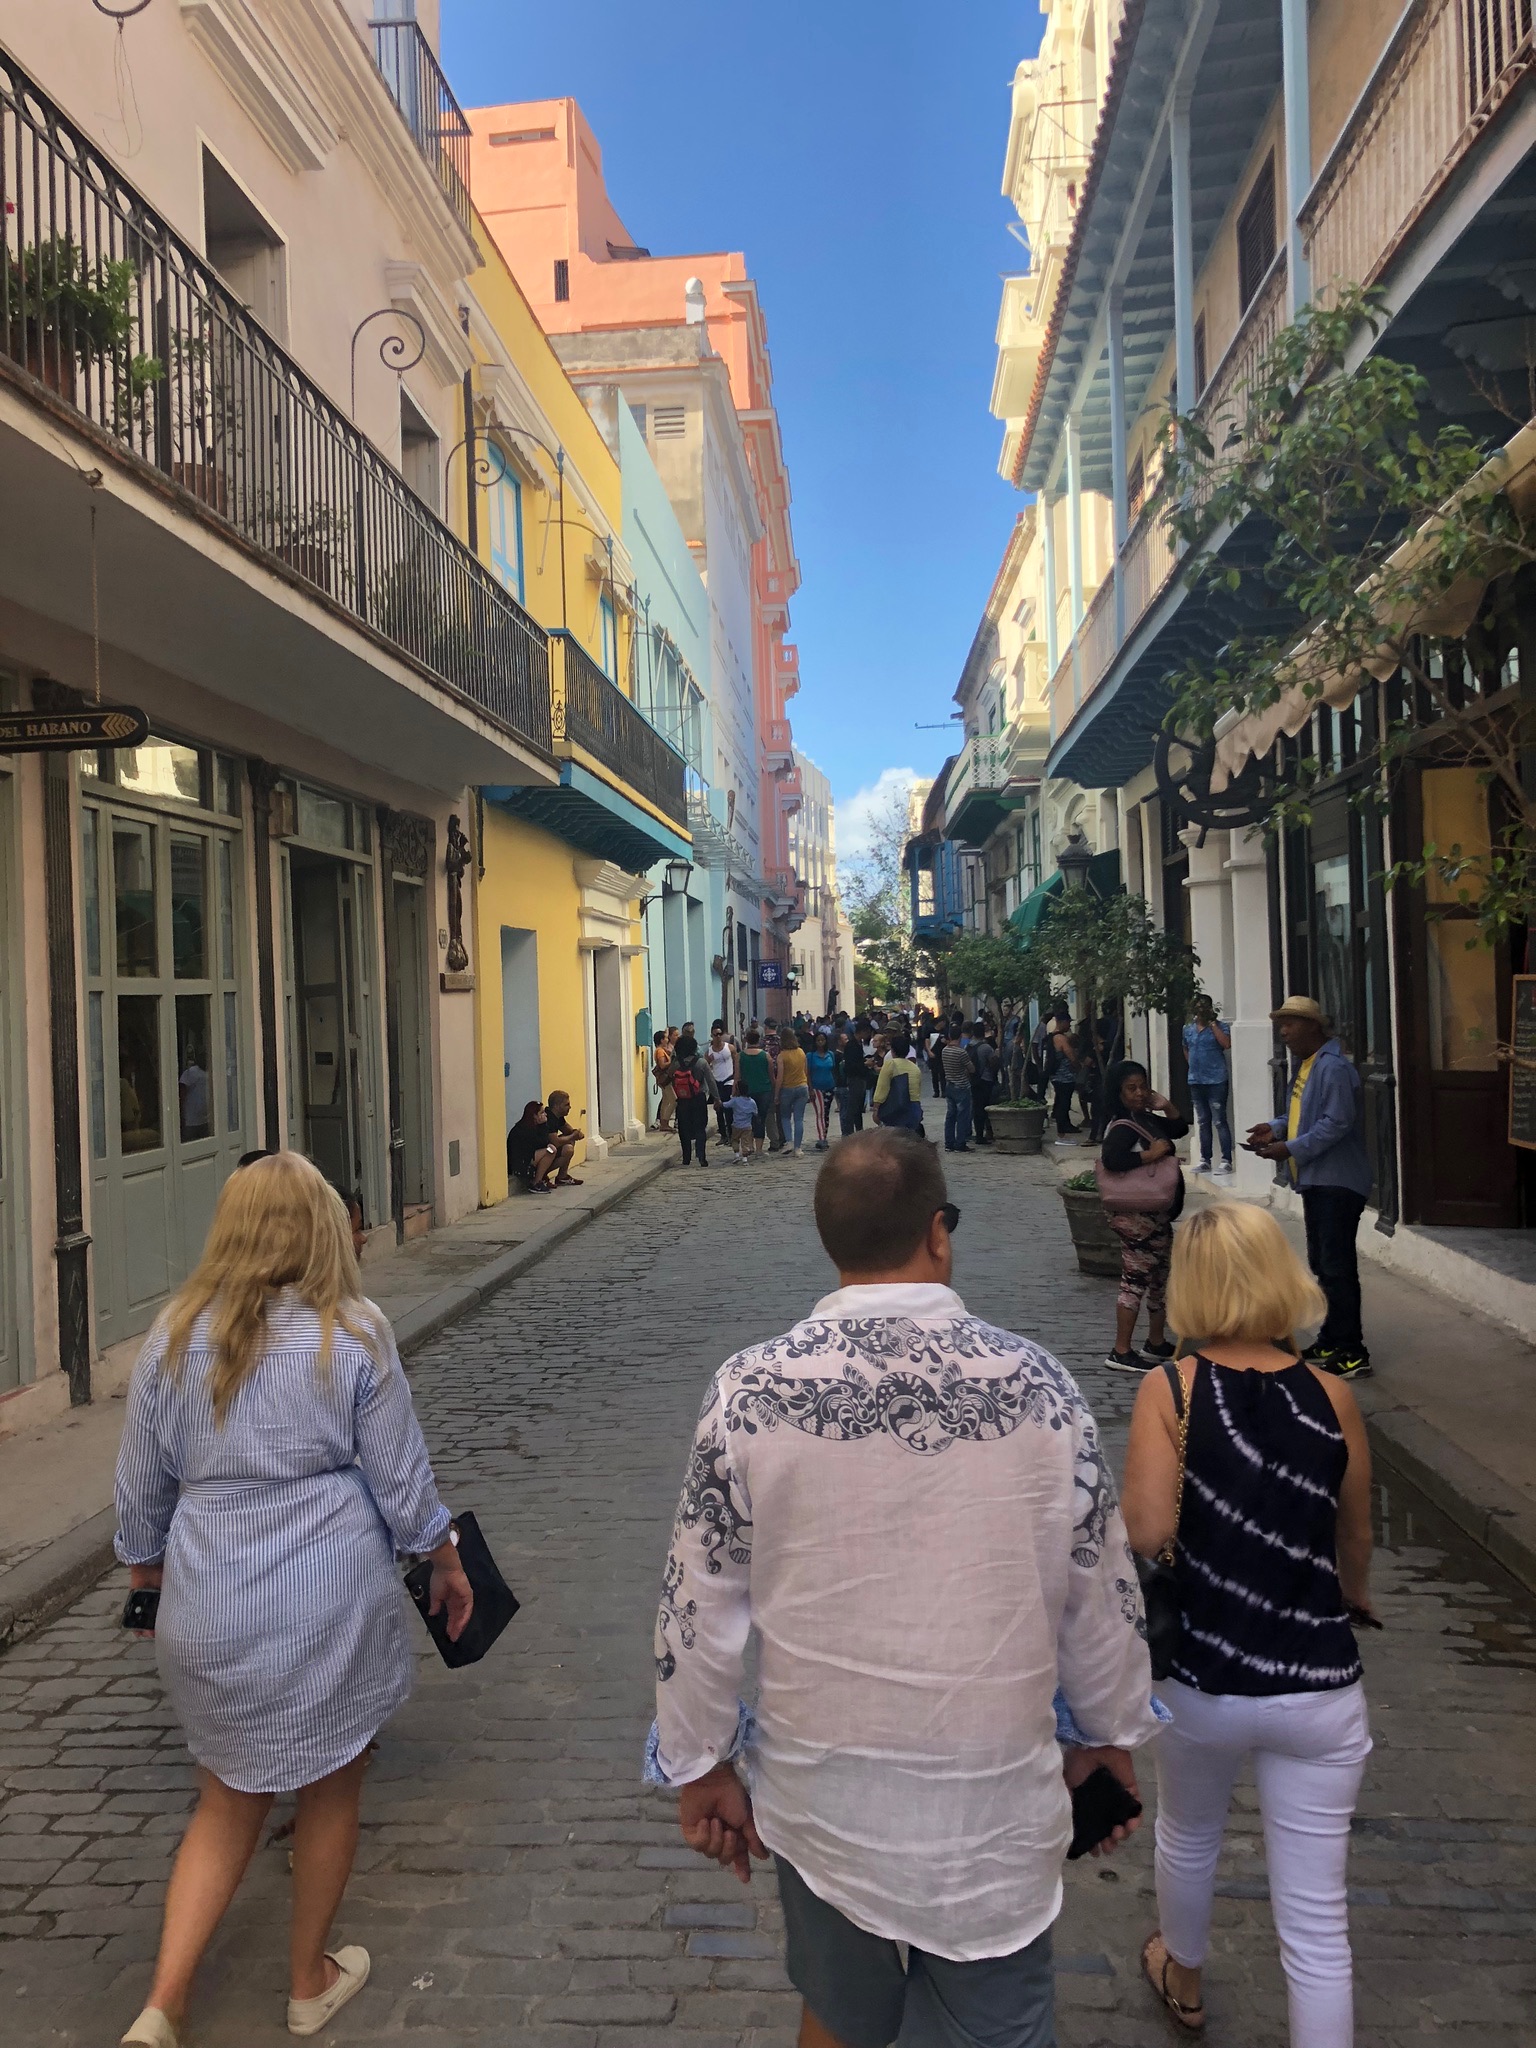 THIRDHOME-Mitglieder auf Tour durch die Straßen von Havanna, Kuba